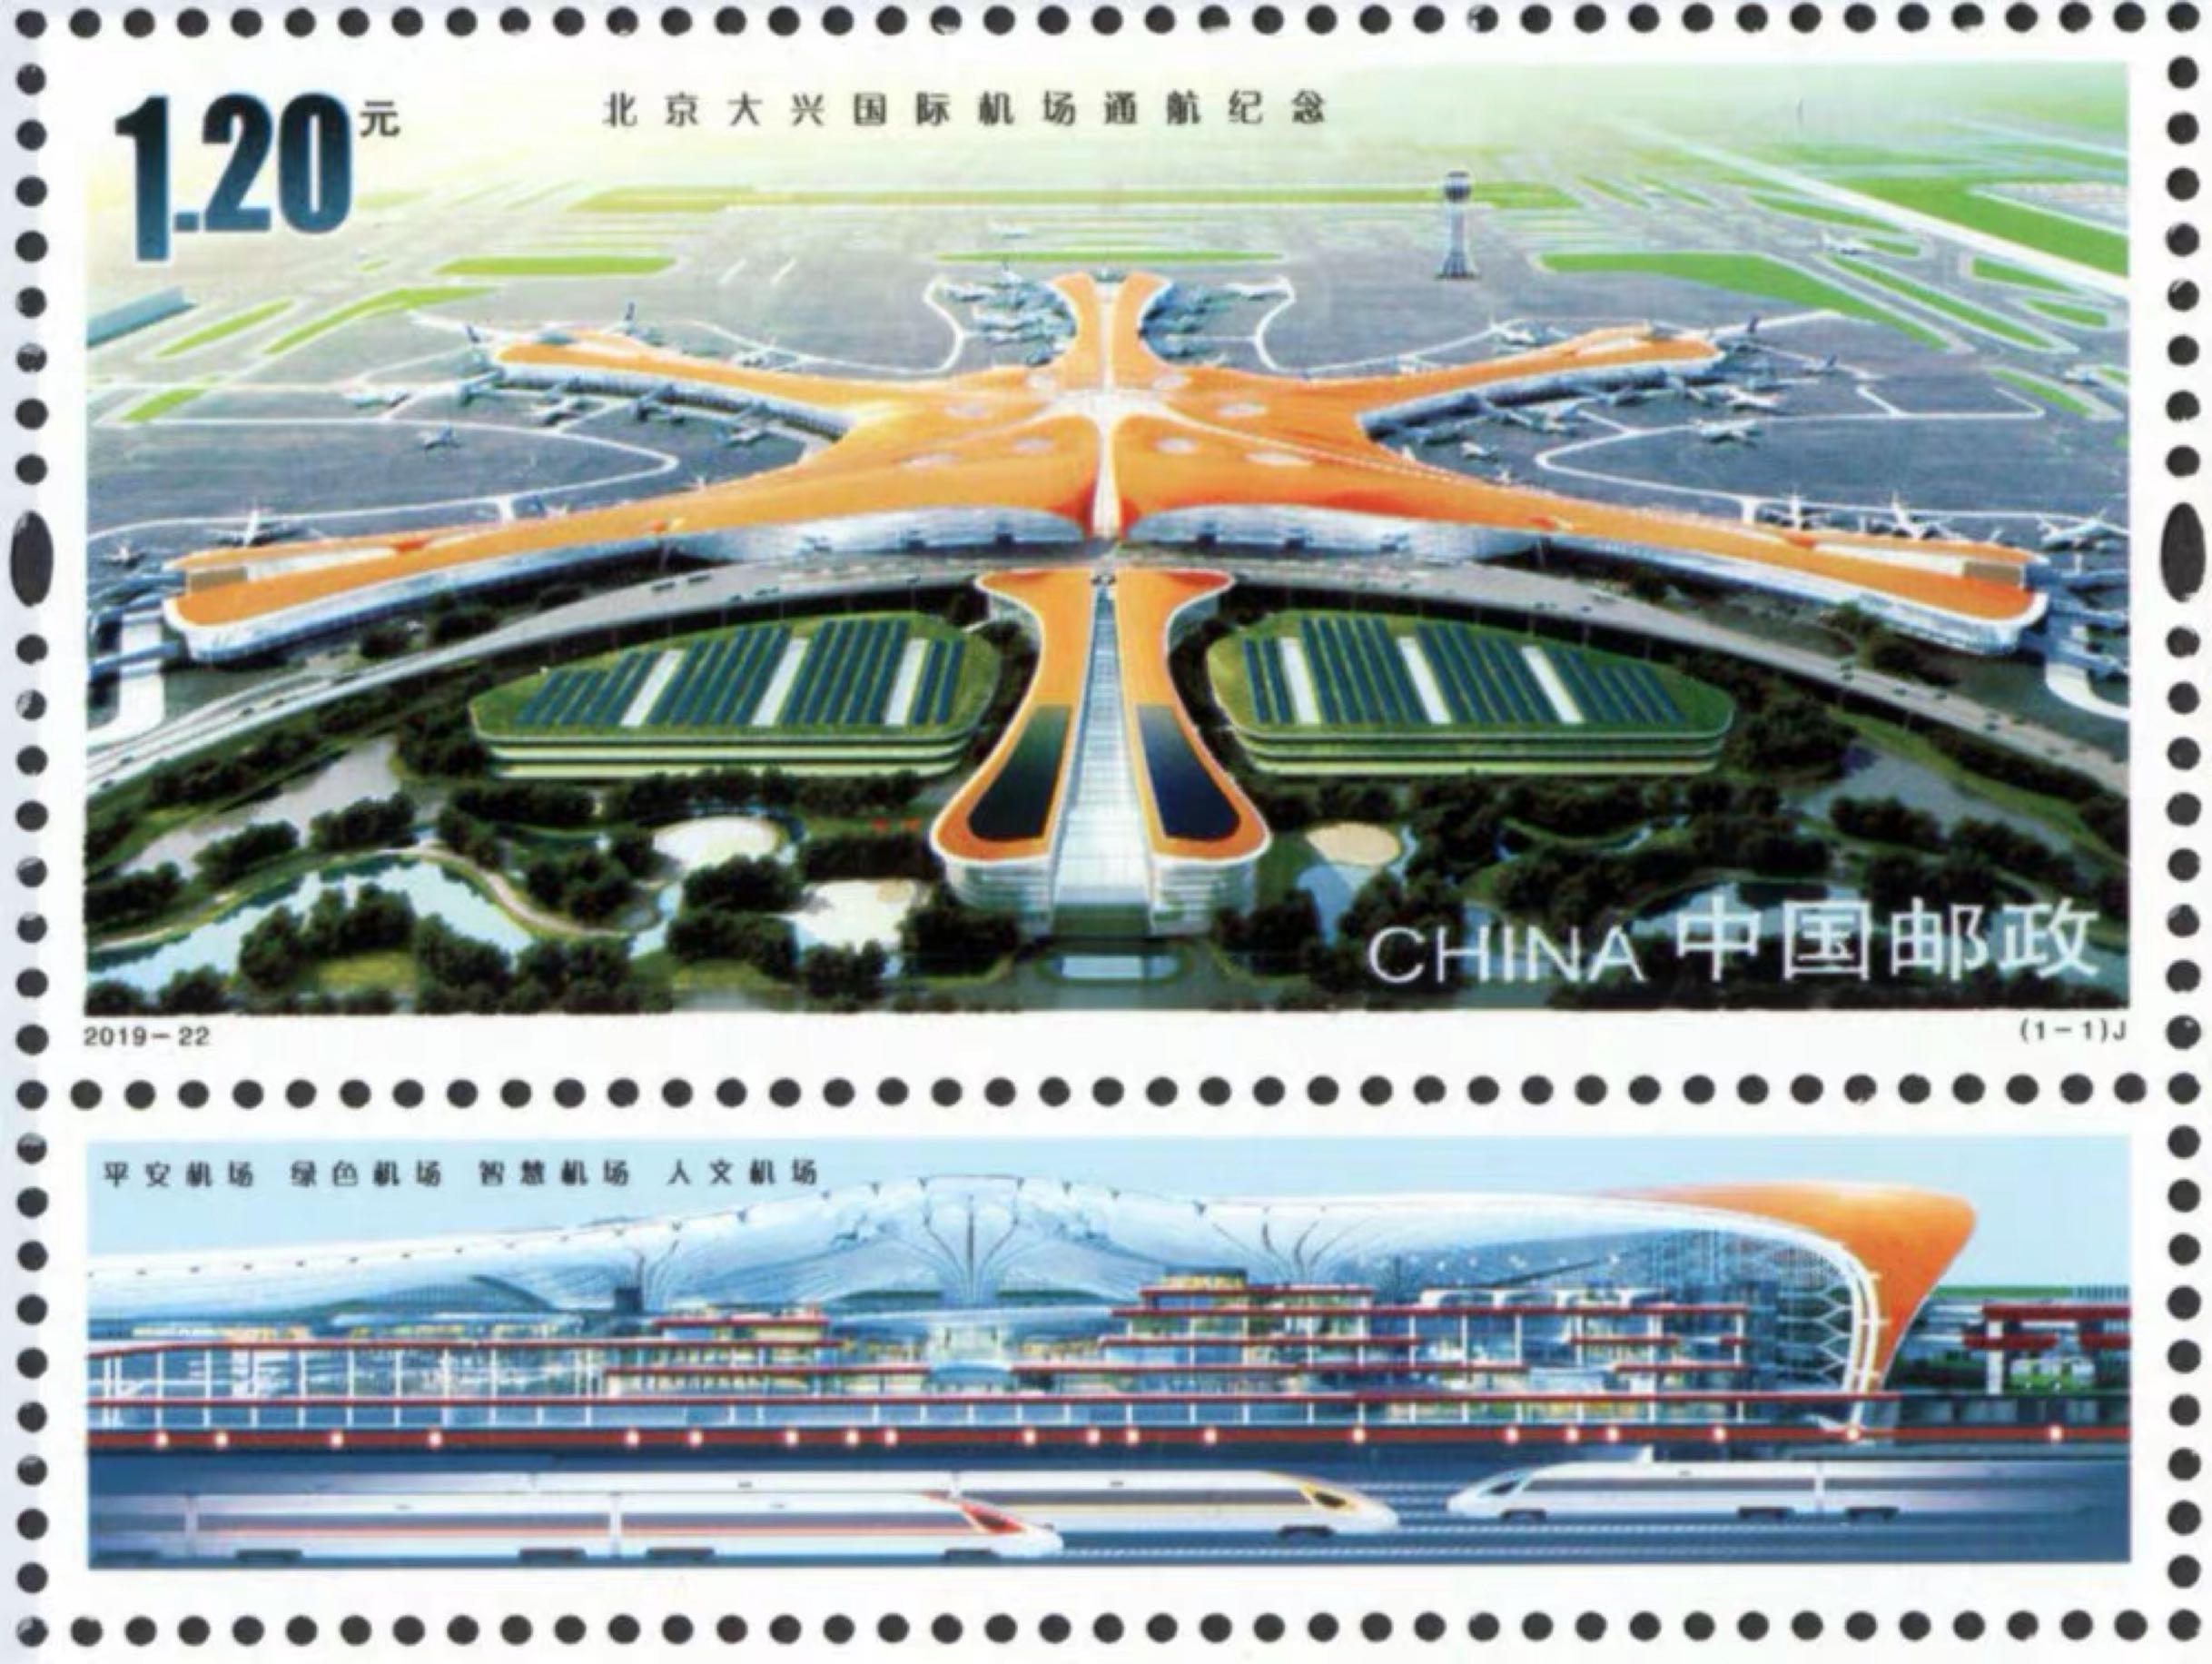 2019-22《北京大兴国际机场通航纪念》邮票 带附票，原胶全品